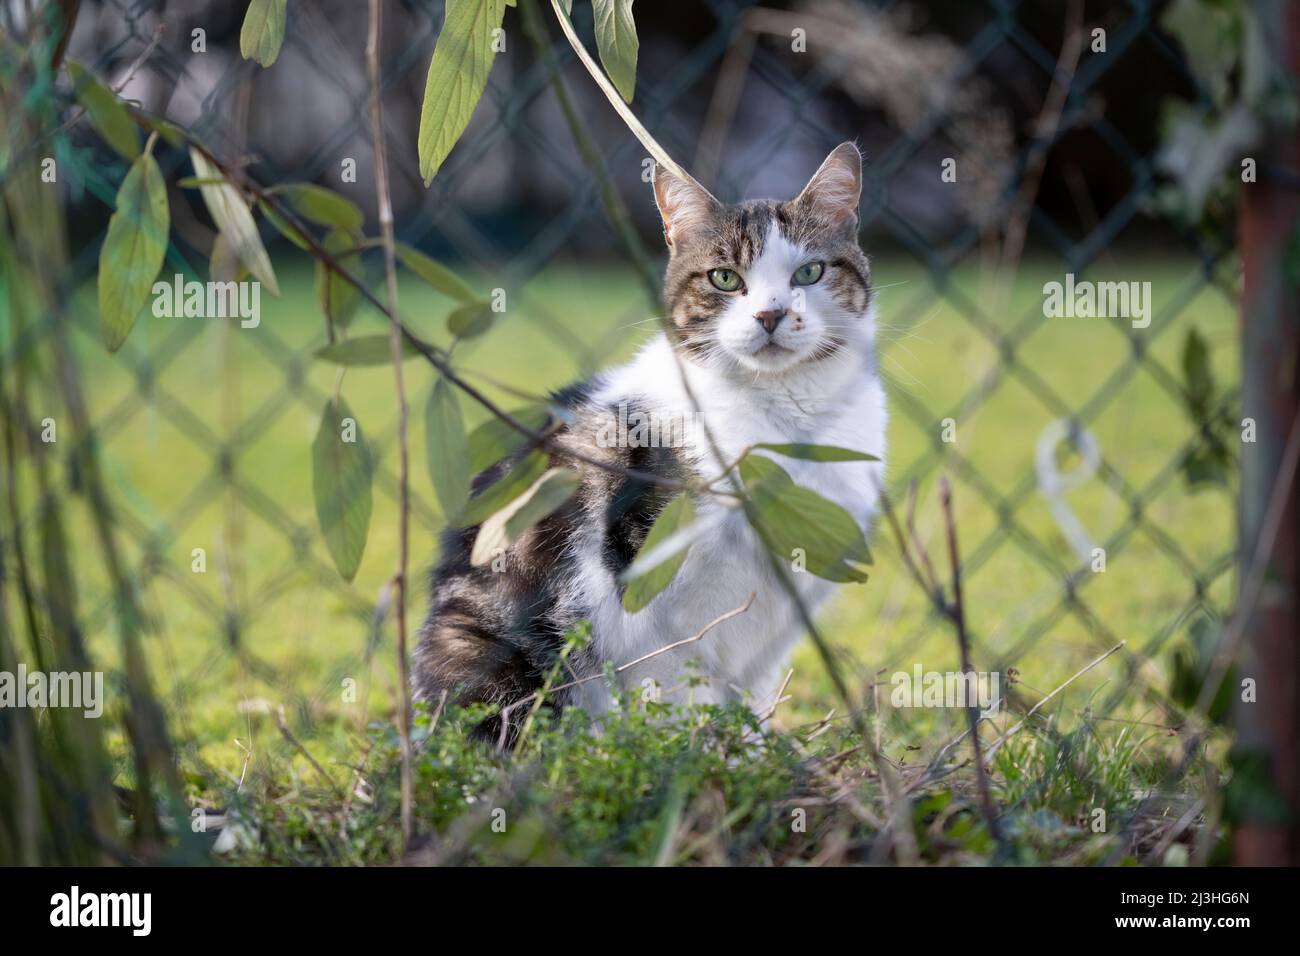 gatto tabby bianco seduto dietro la recinzione catena-maglia all'aperto in giardino guardando la macchina fotografica Foto Stock